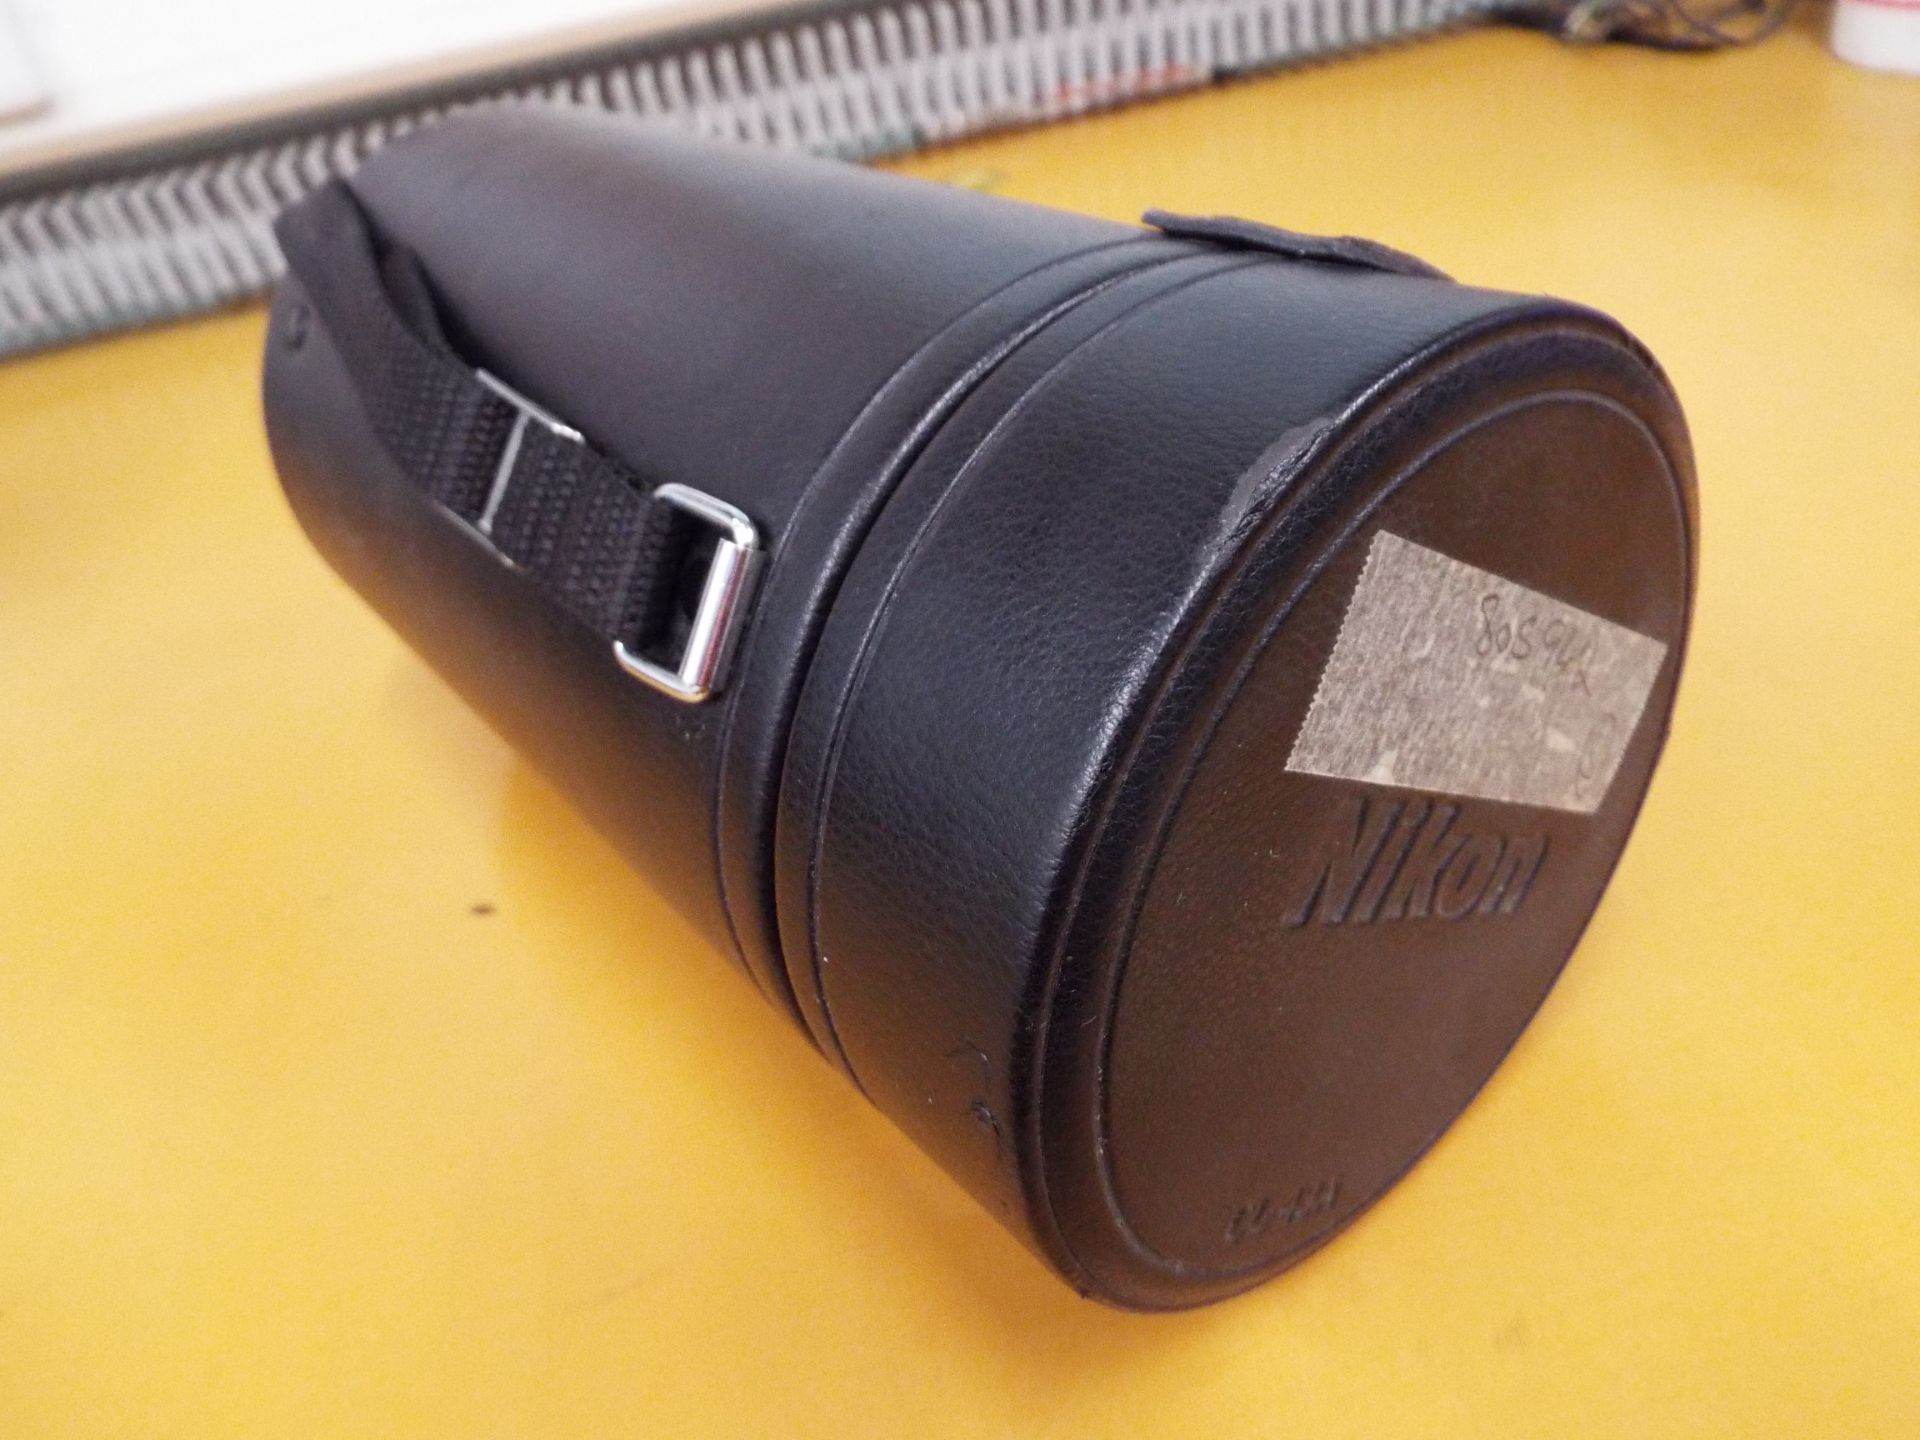 Nikon ED AF Nikkor 80-200mm 1:2.8 D Lense with Leather Carry Case - Bild 7 aus 7